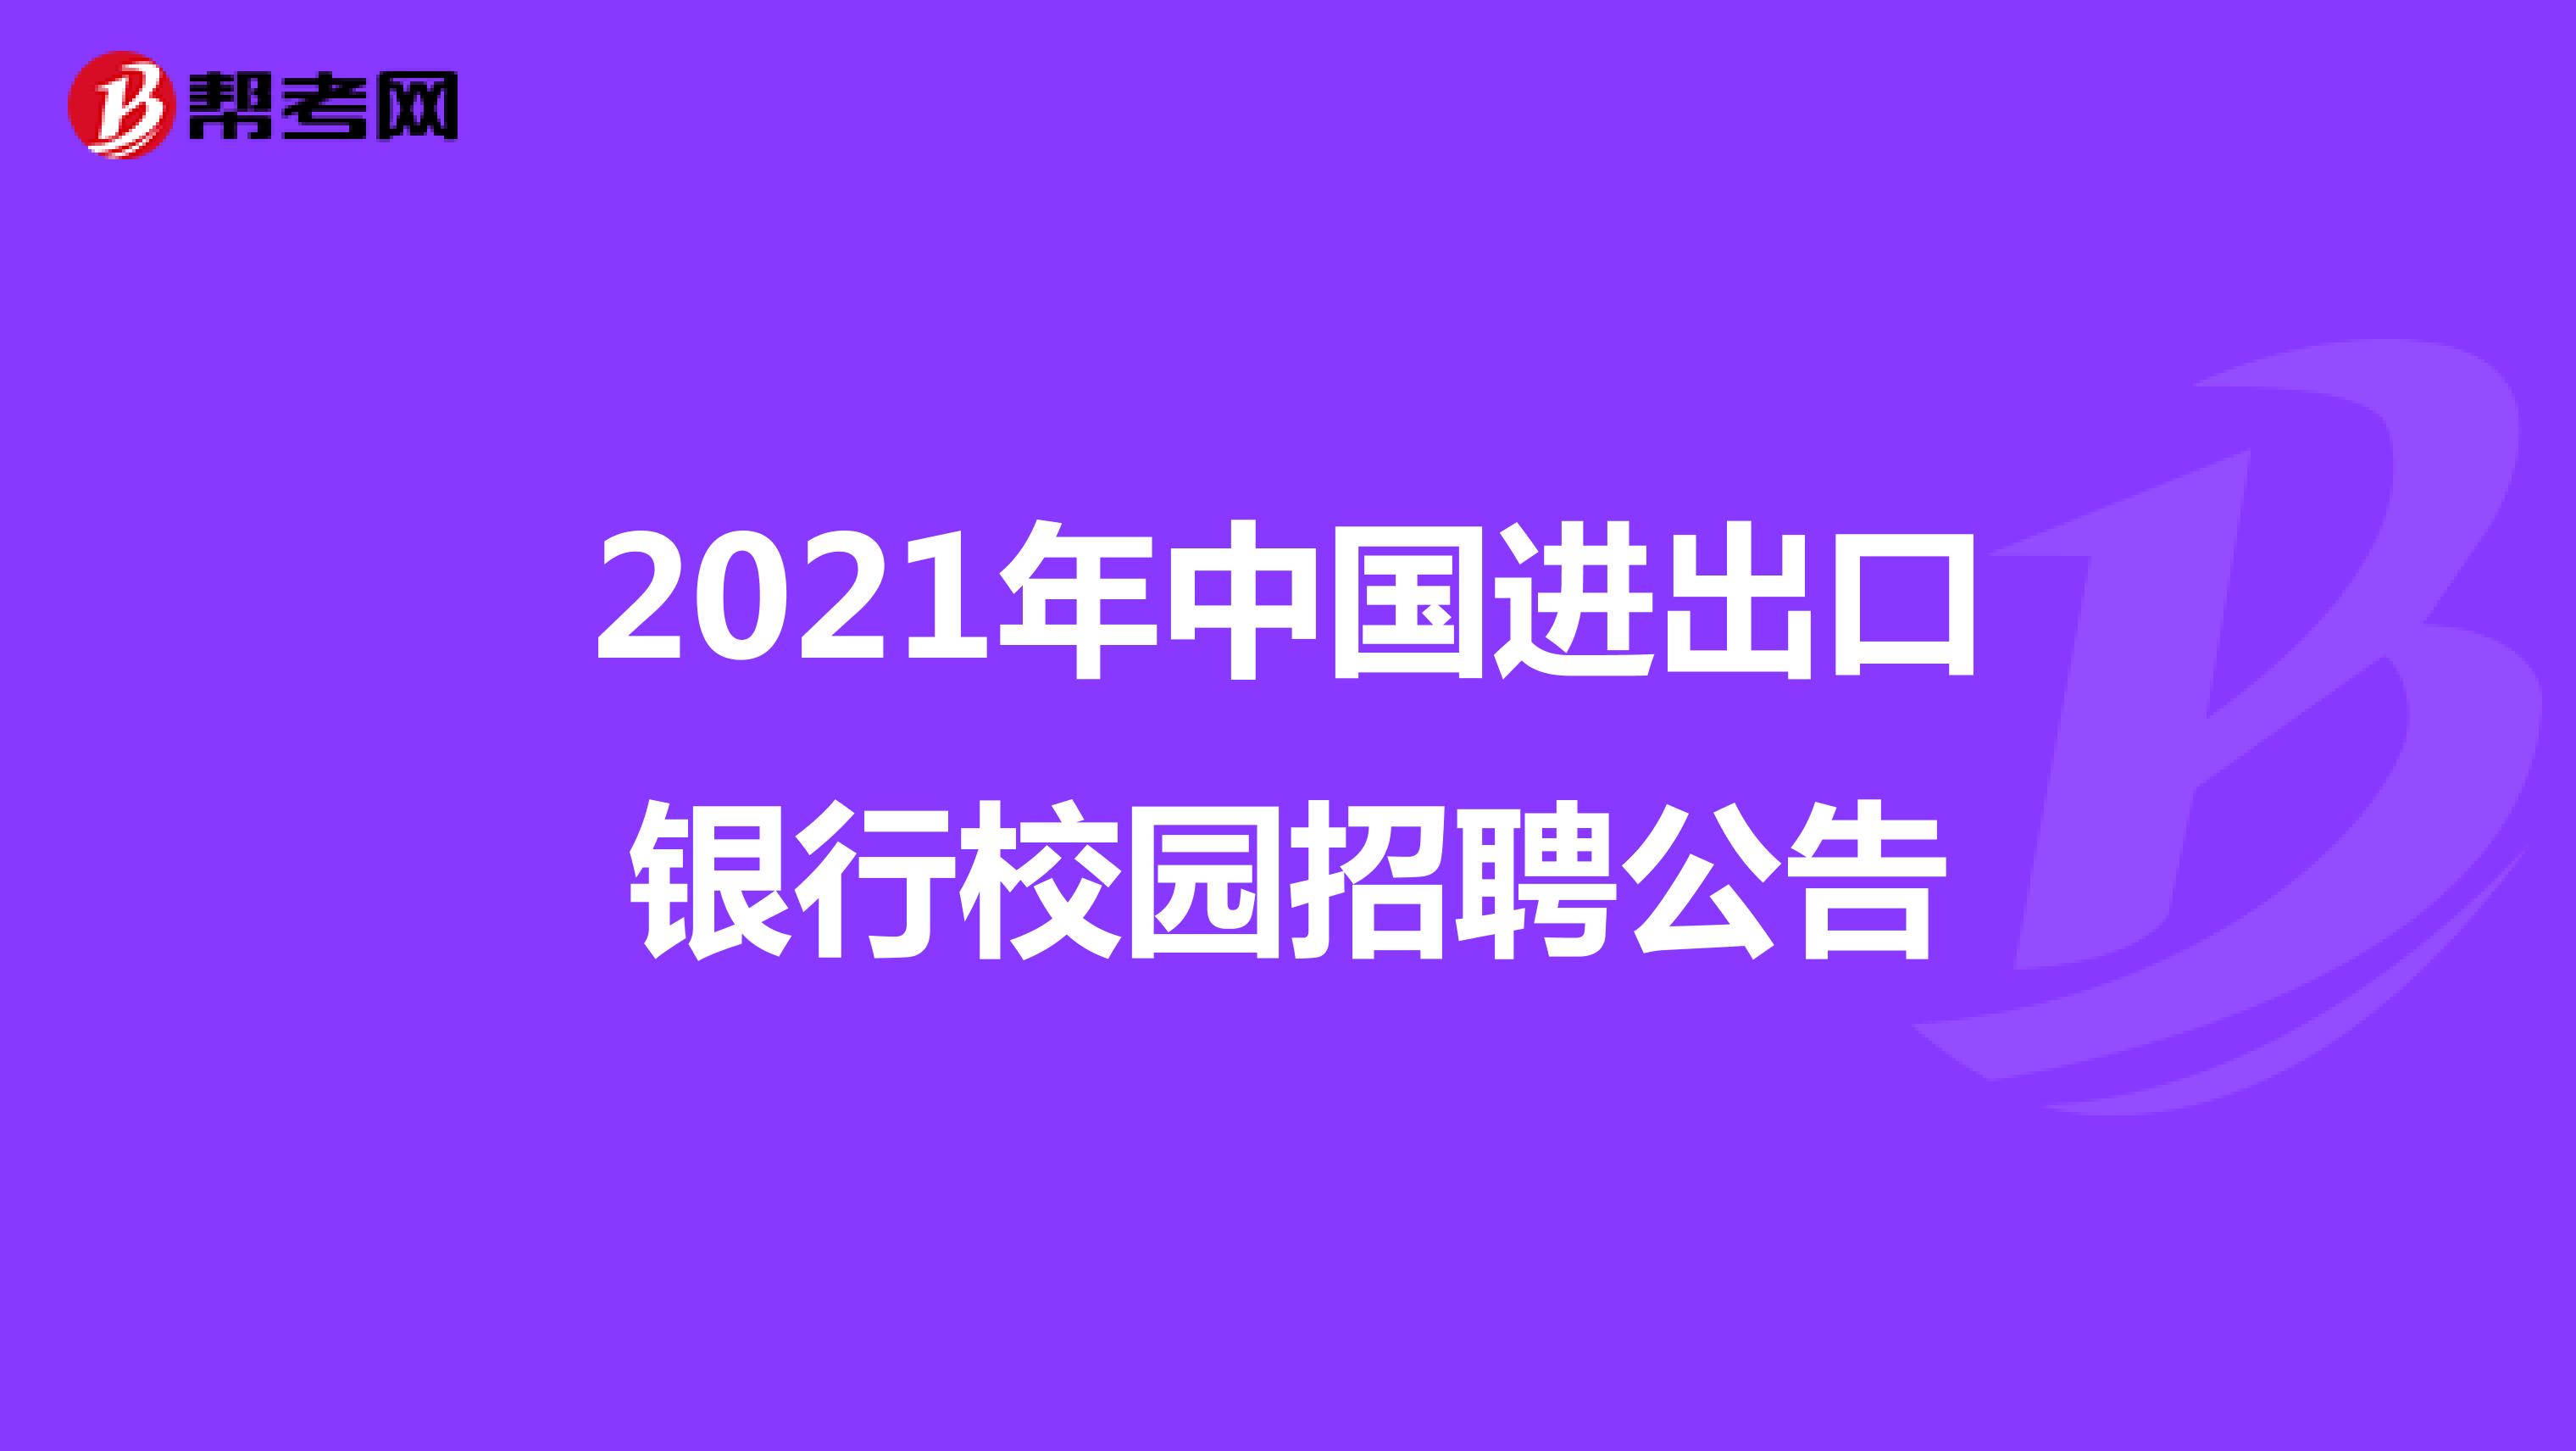 2021年中国进出口银行校园招聘公告